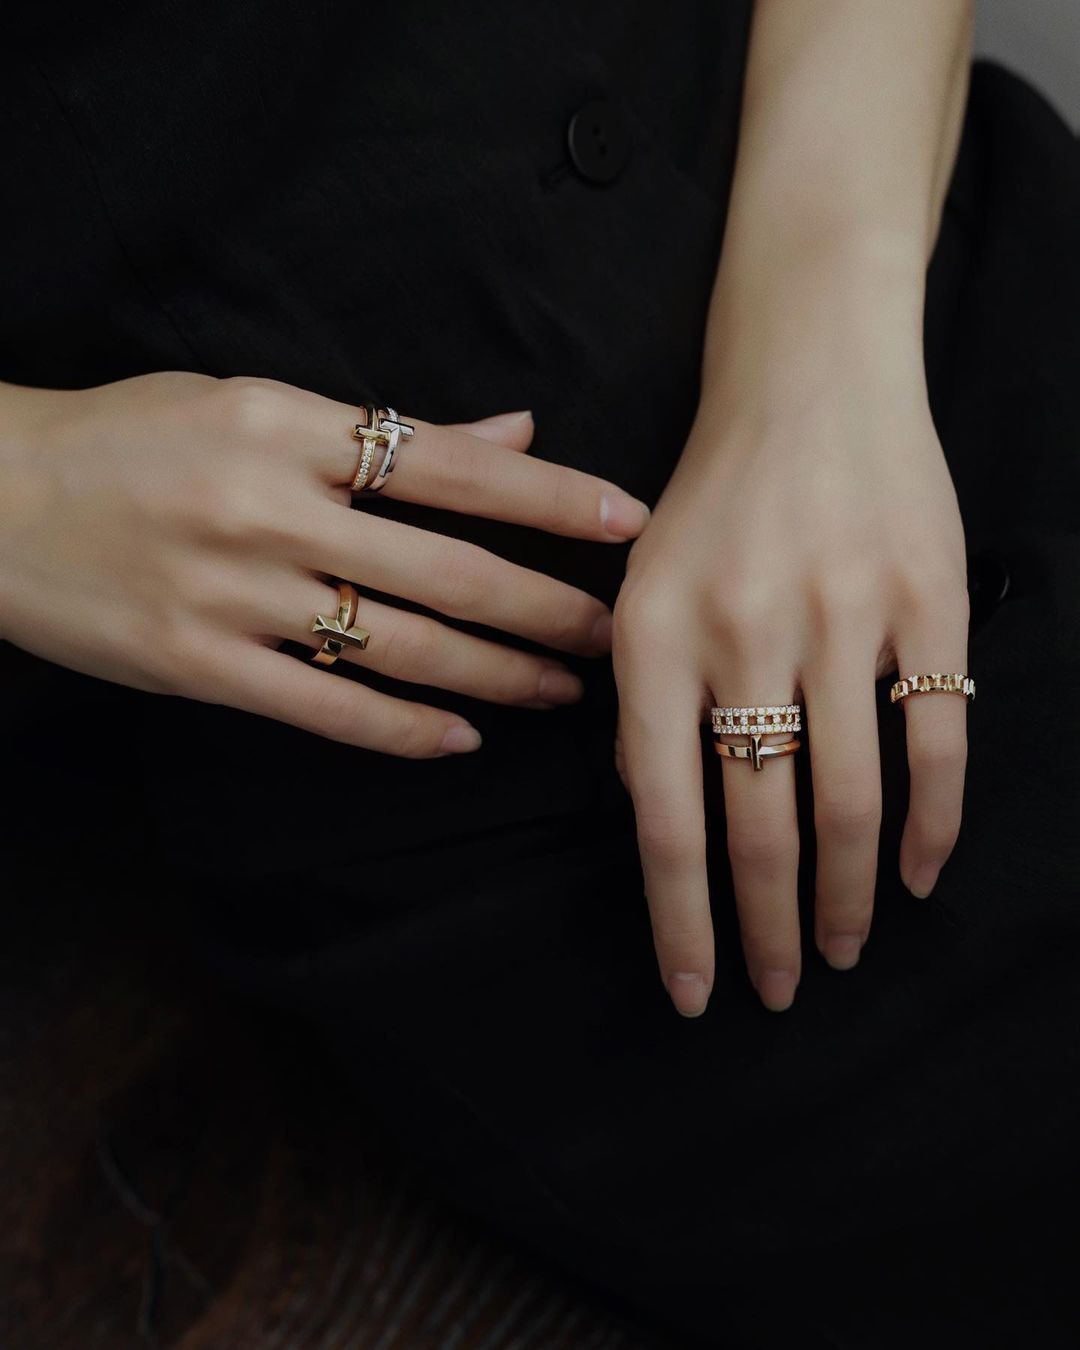 chon nhan cho tay bup mang - Giải mã bí mật tính cách qua thói quen đeo nhẫn và các tips chọn nhẫn nữ cho từng đôi tay